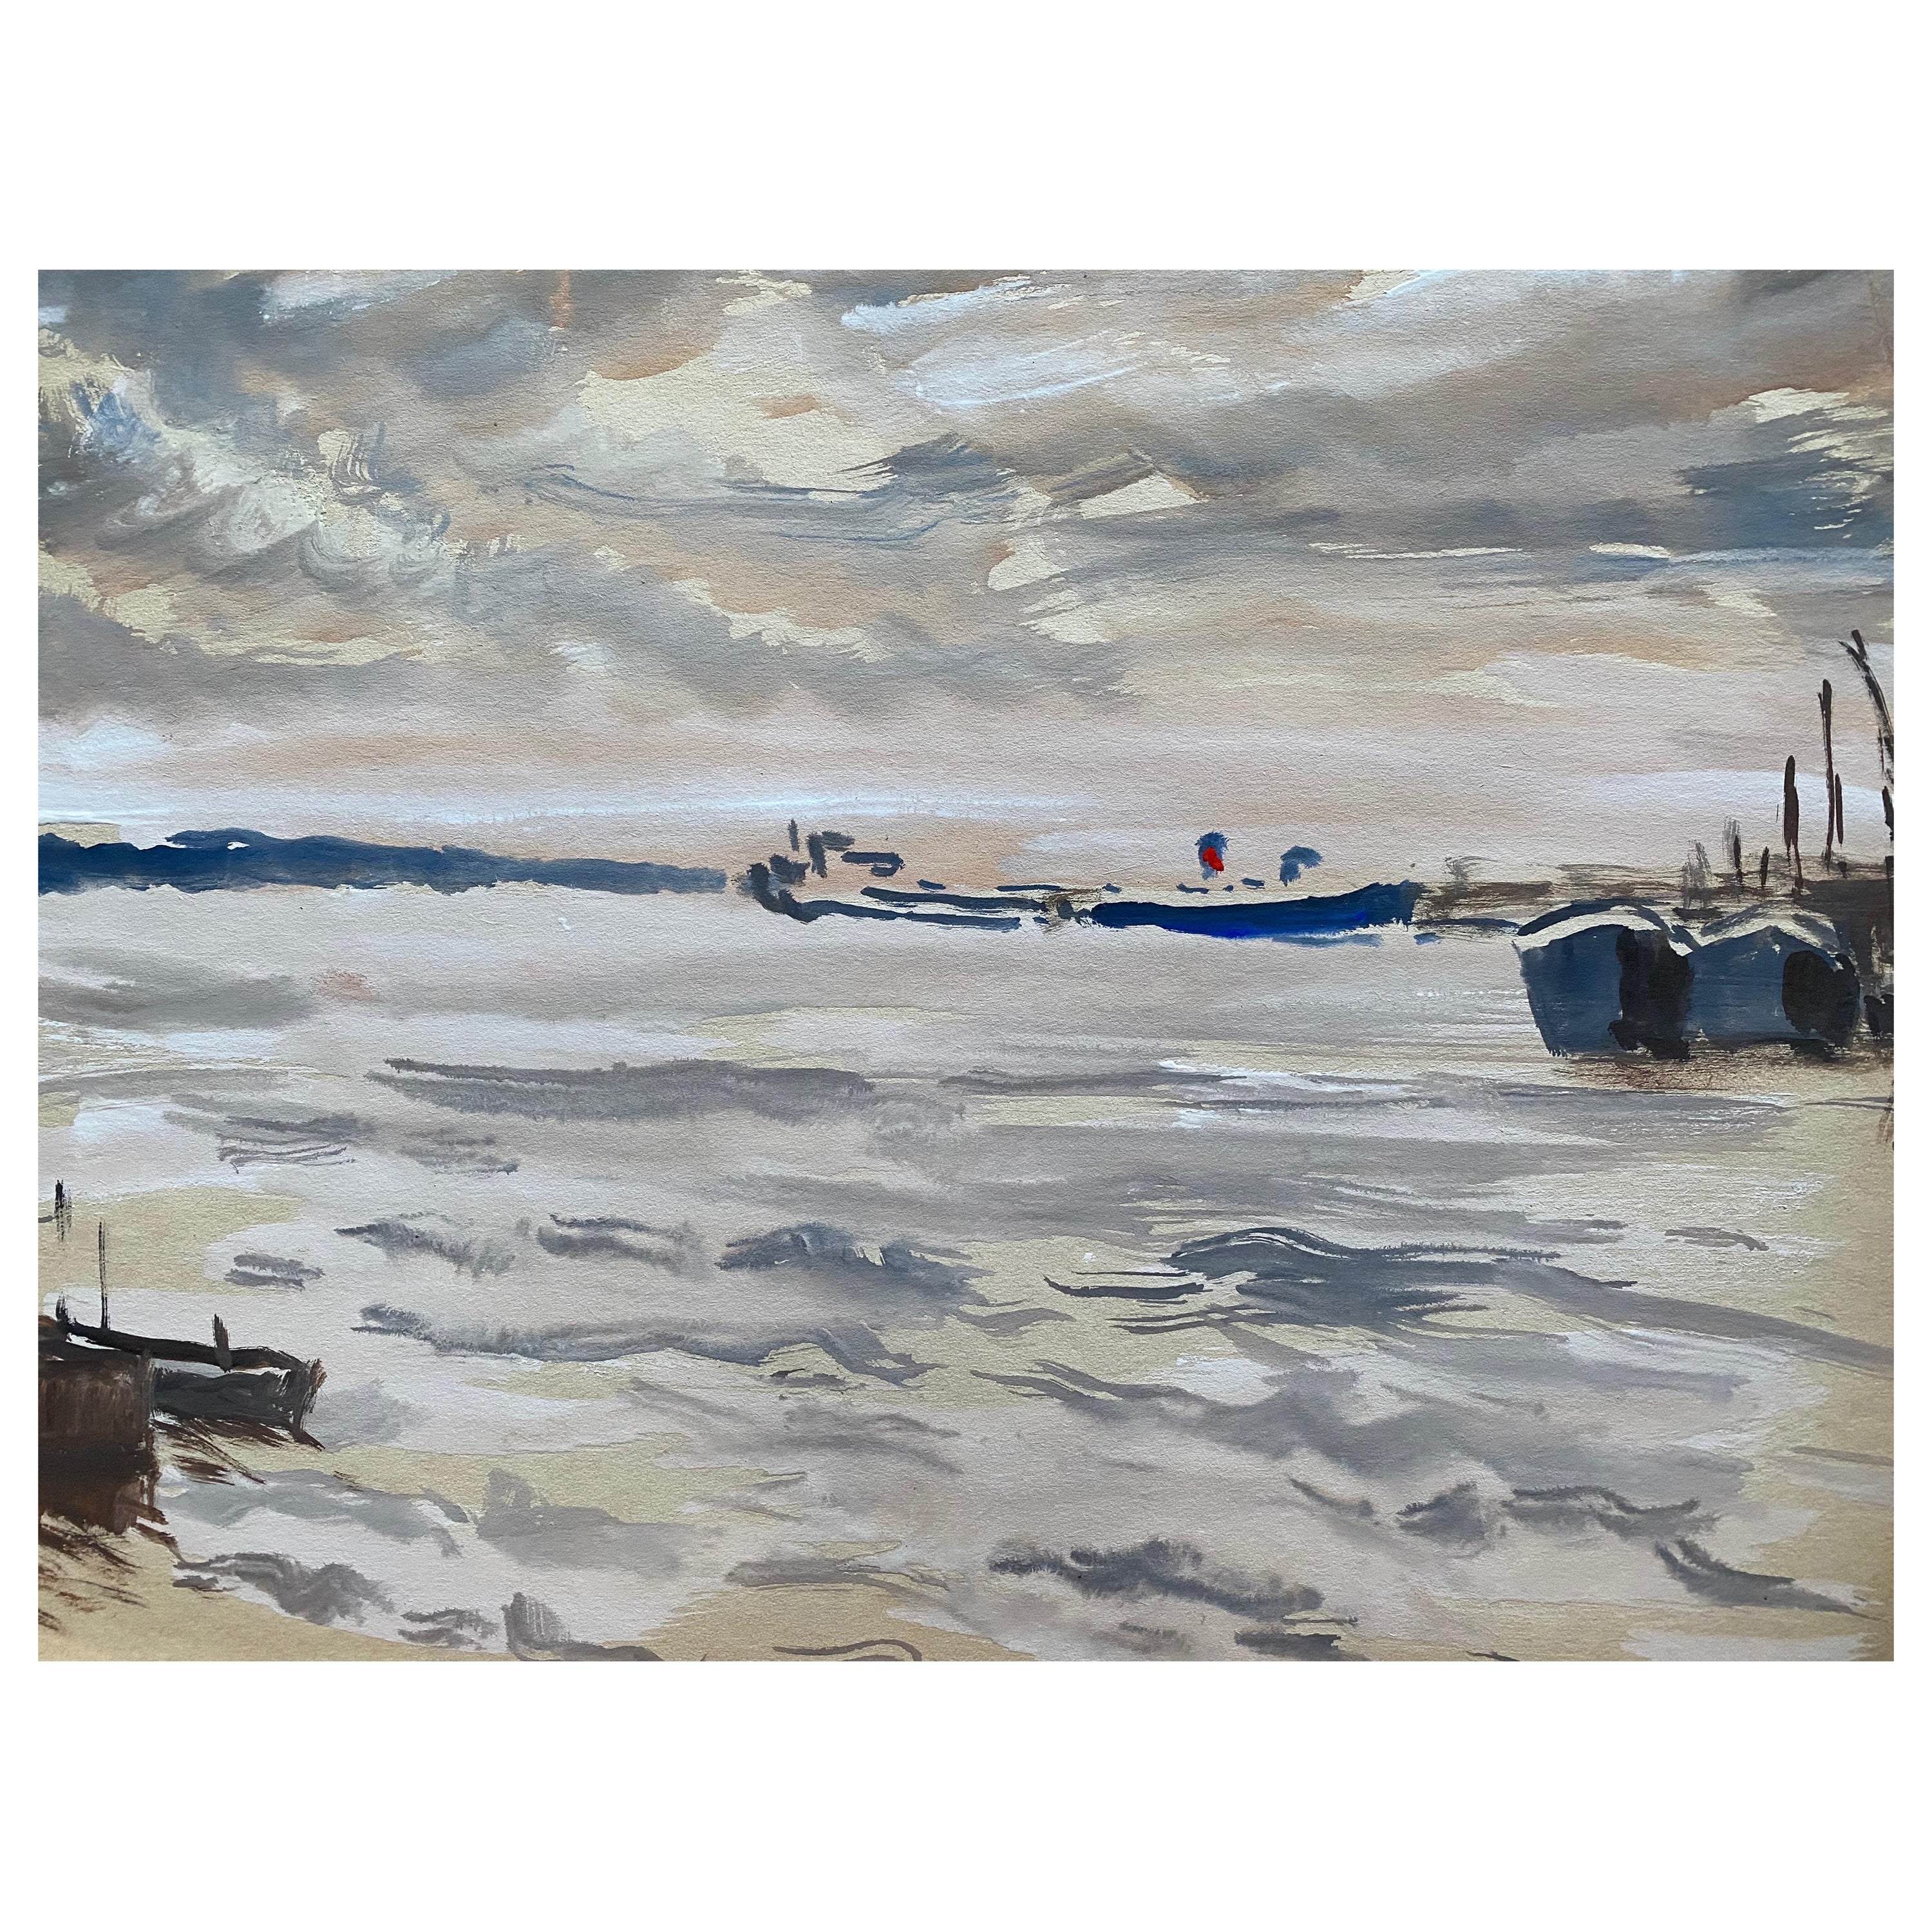 Peinture à l'aquarelle de l'artiste irlandais Quiet Coastal Sea, Southampton, milieu du 20e siècle